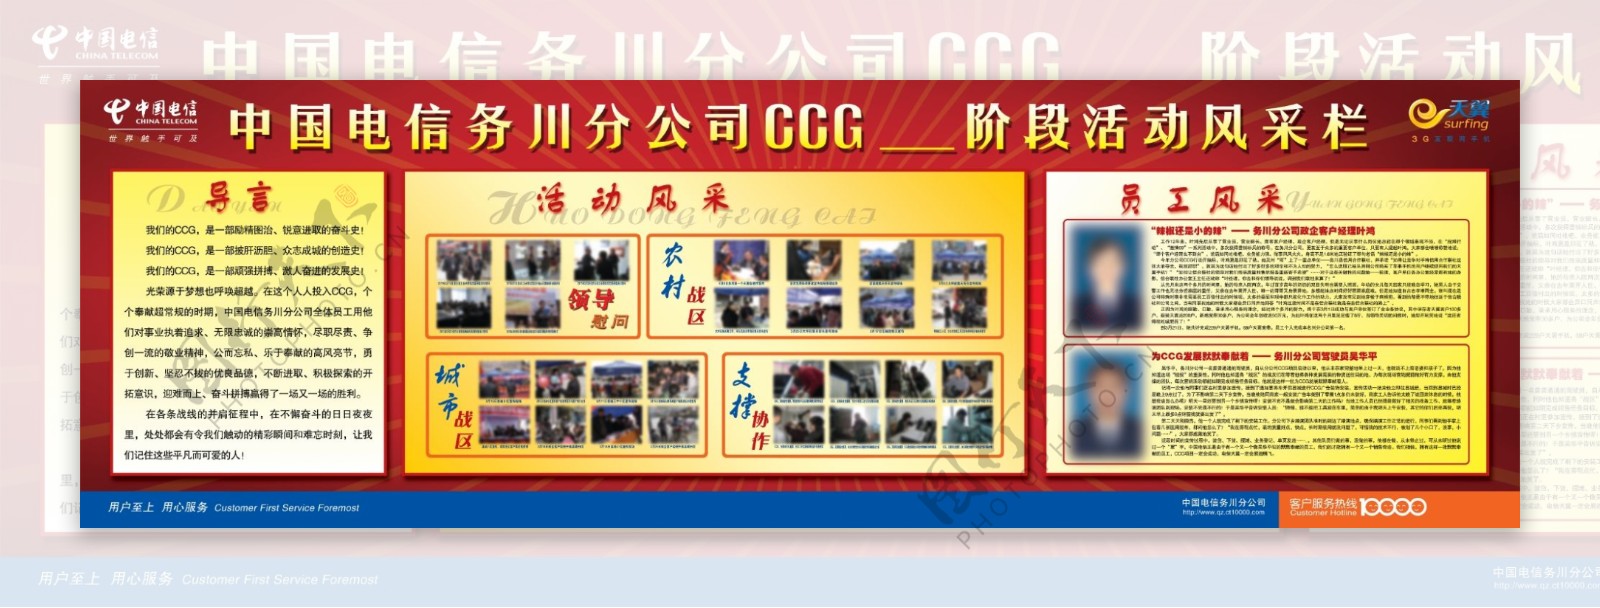 ccg活动风采栏图片